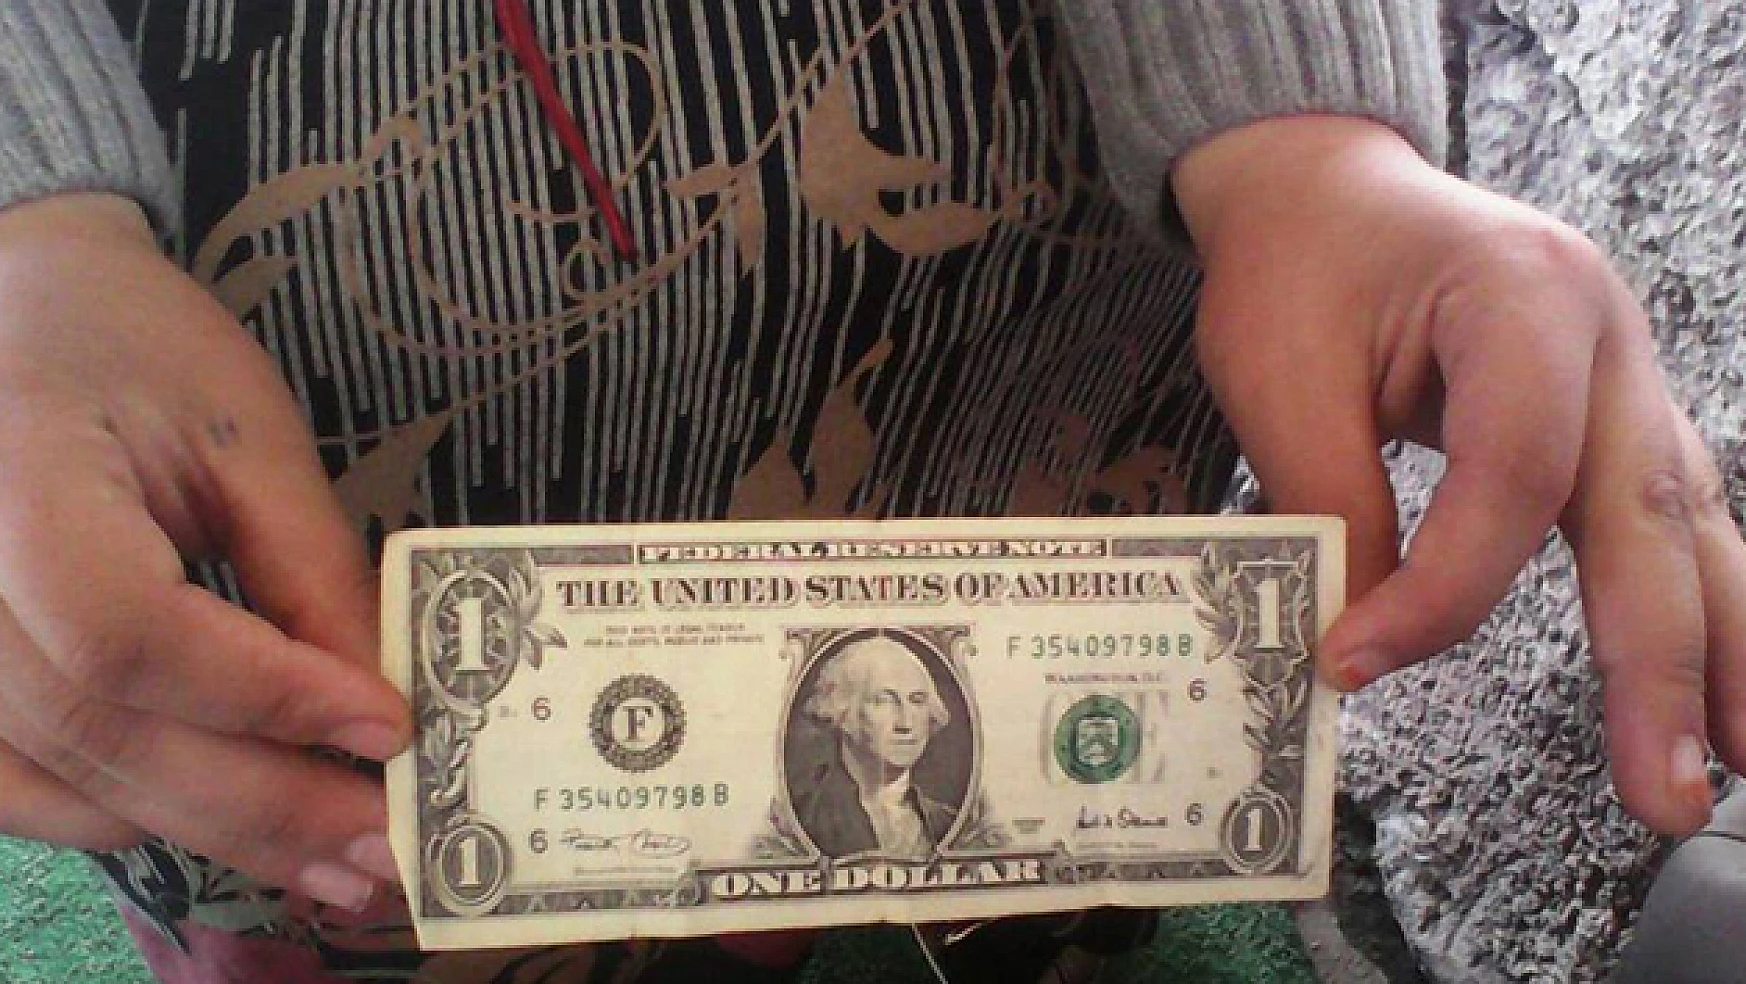 Erzurum'da çarpıcı '1 dolar' iddiası